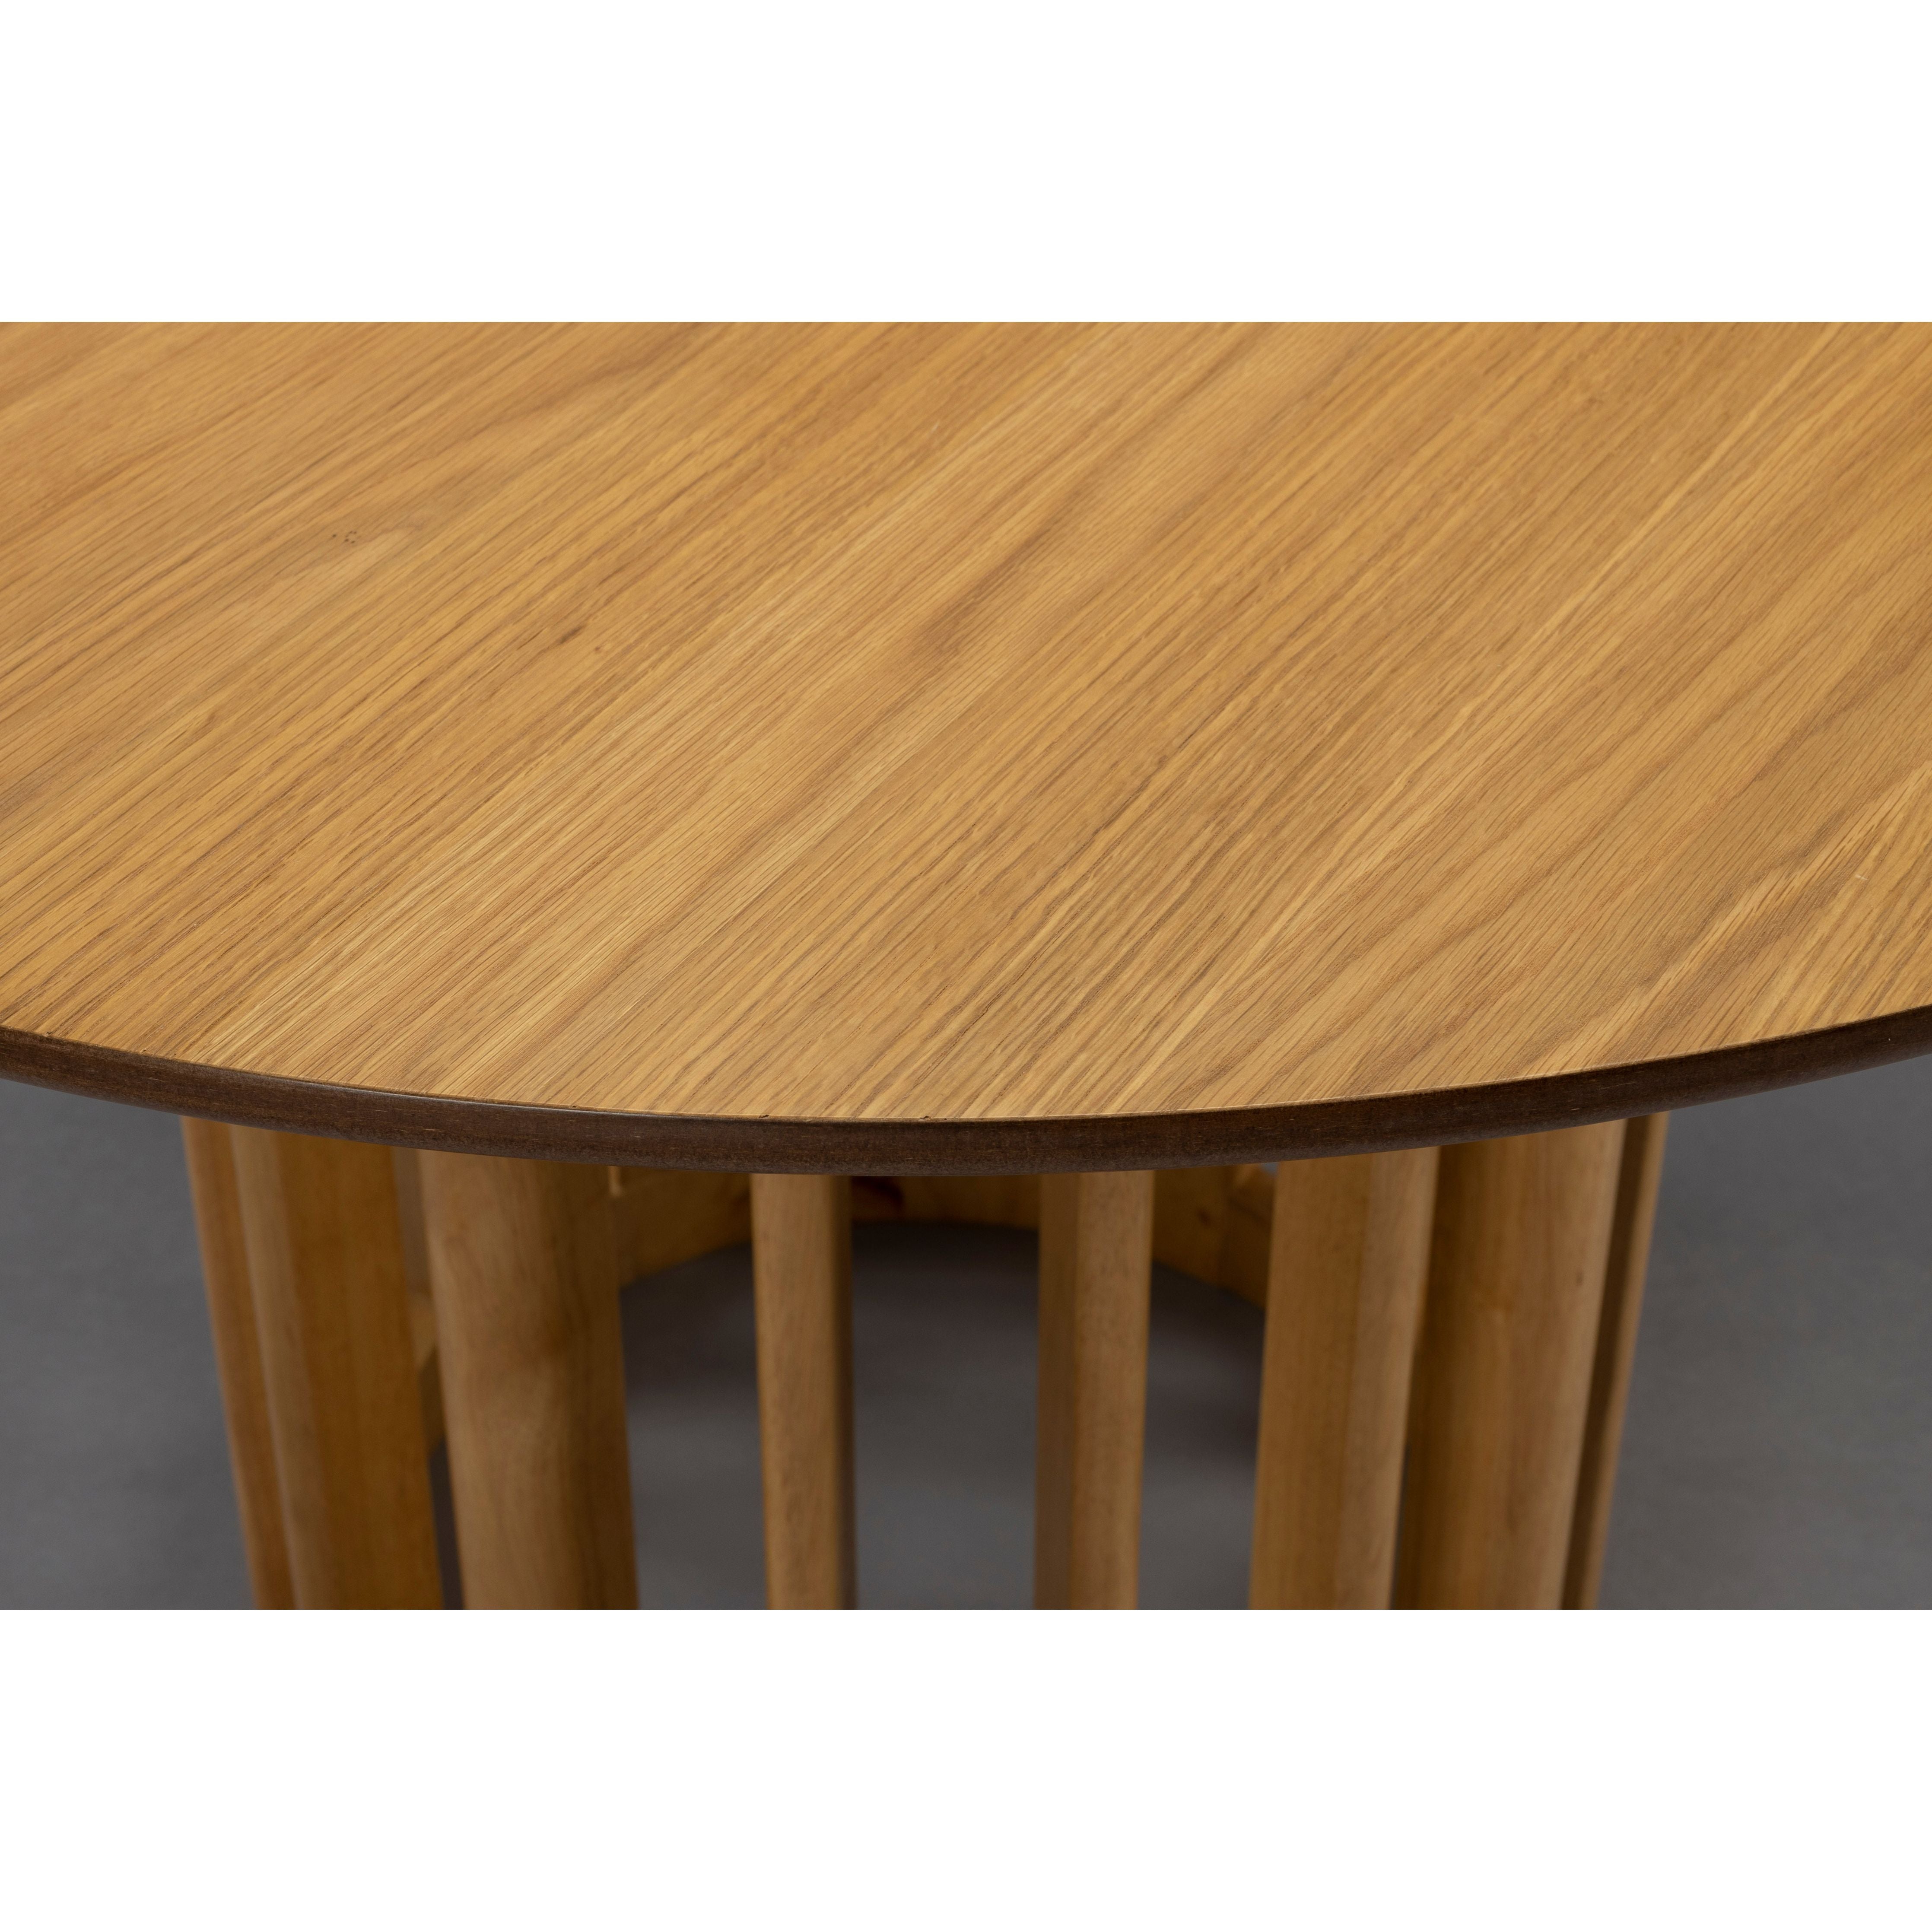 Table barlet 120' oak